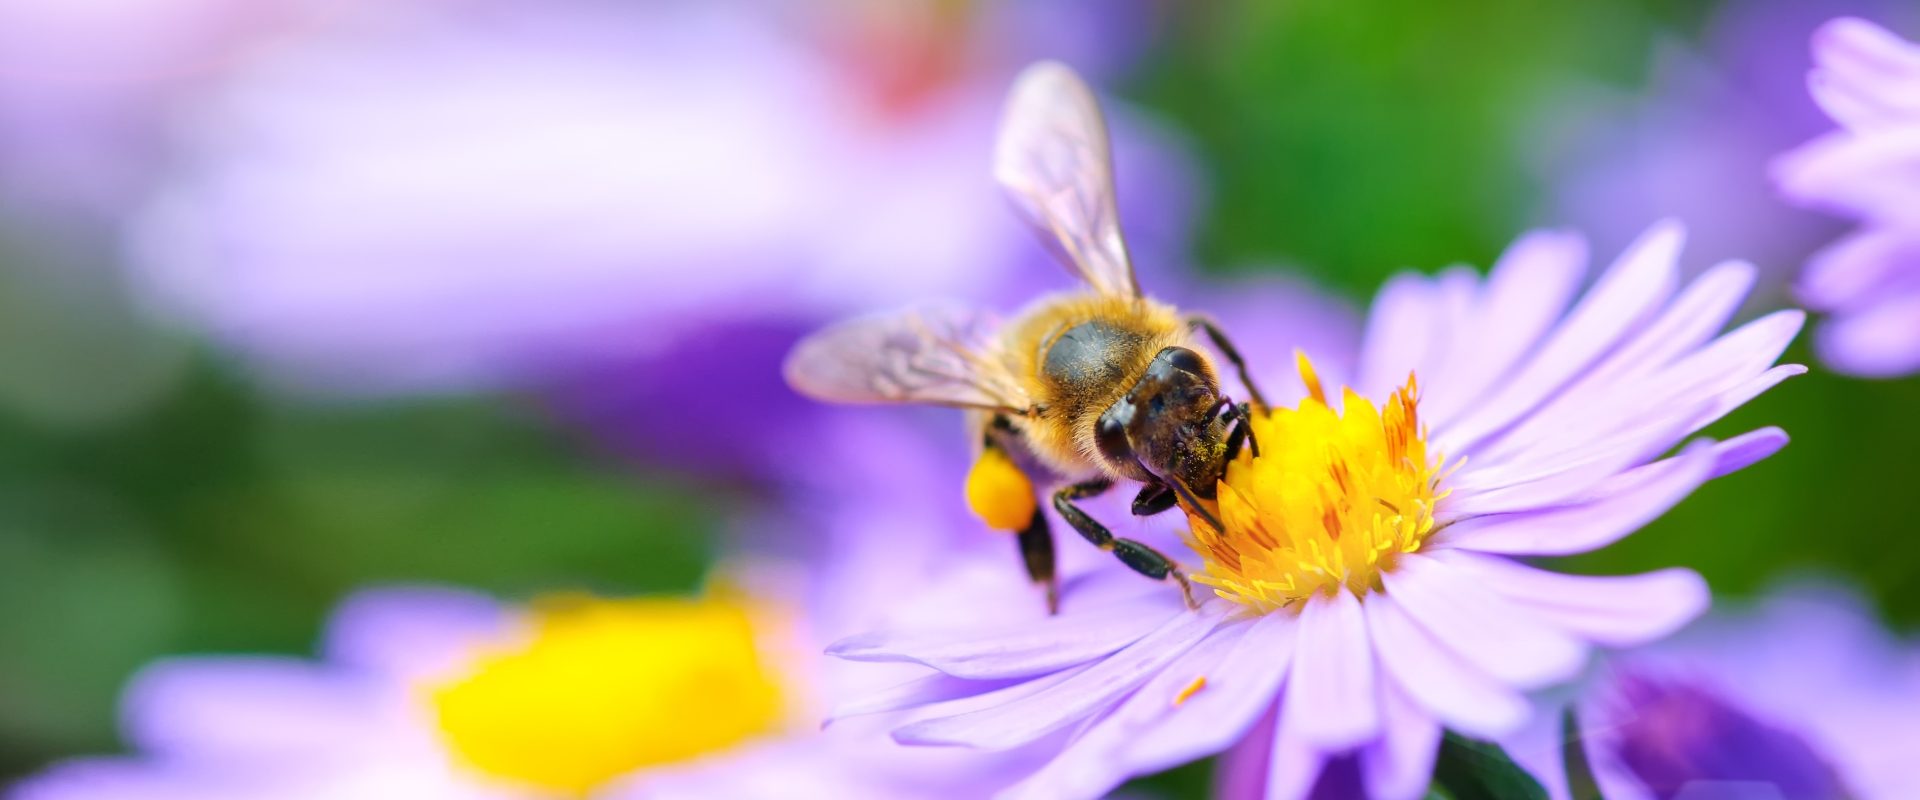 Użądlenie osy lub pszczoły - objawy, pierwsza pomoc. Jak pomóc w przypadku wstrząsu anafilaktycznego? Pszczoła zbiera nektar z fioletowego kwiatka.